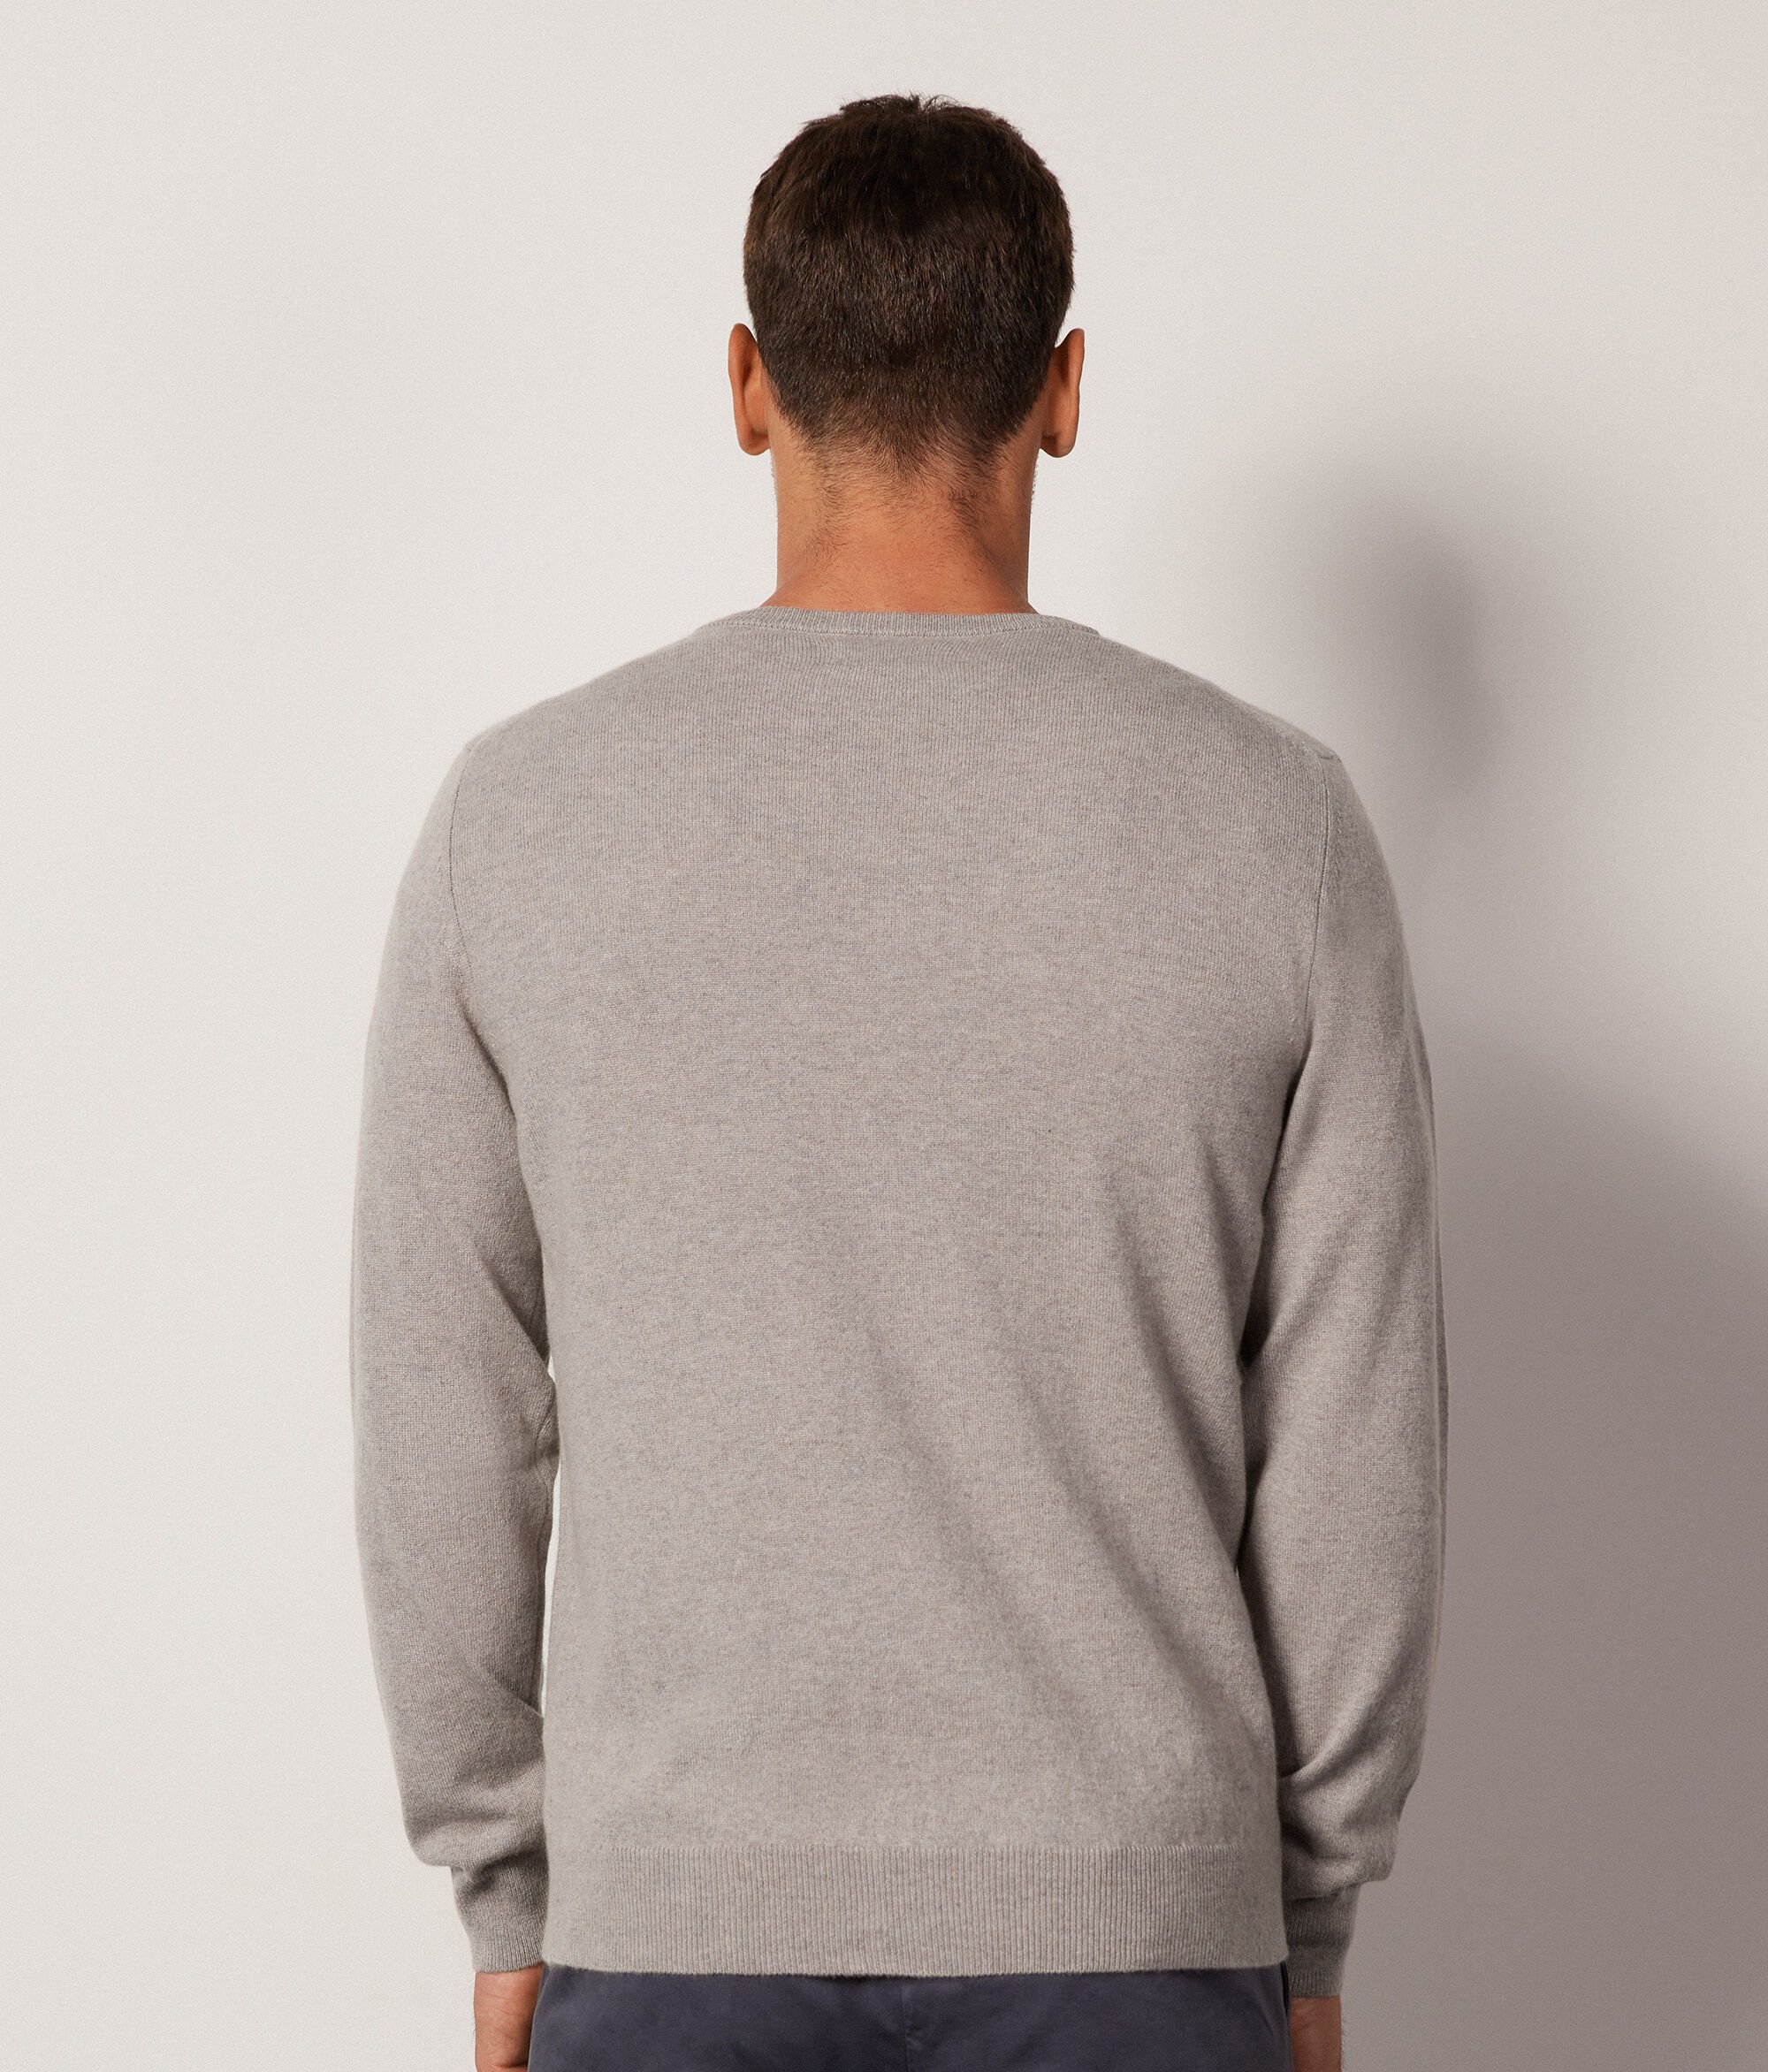 Ultrasoft Cashmere V-Neck Sweater